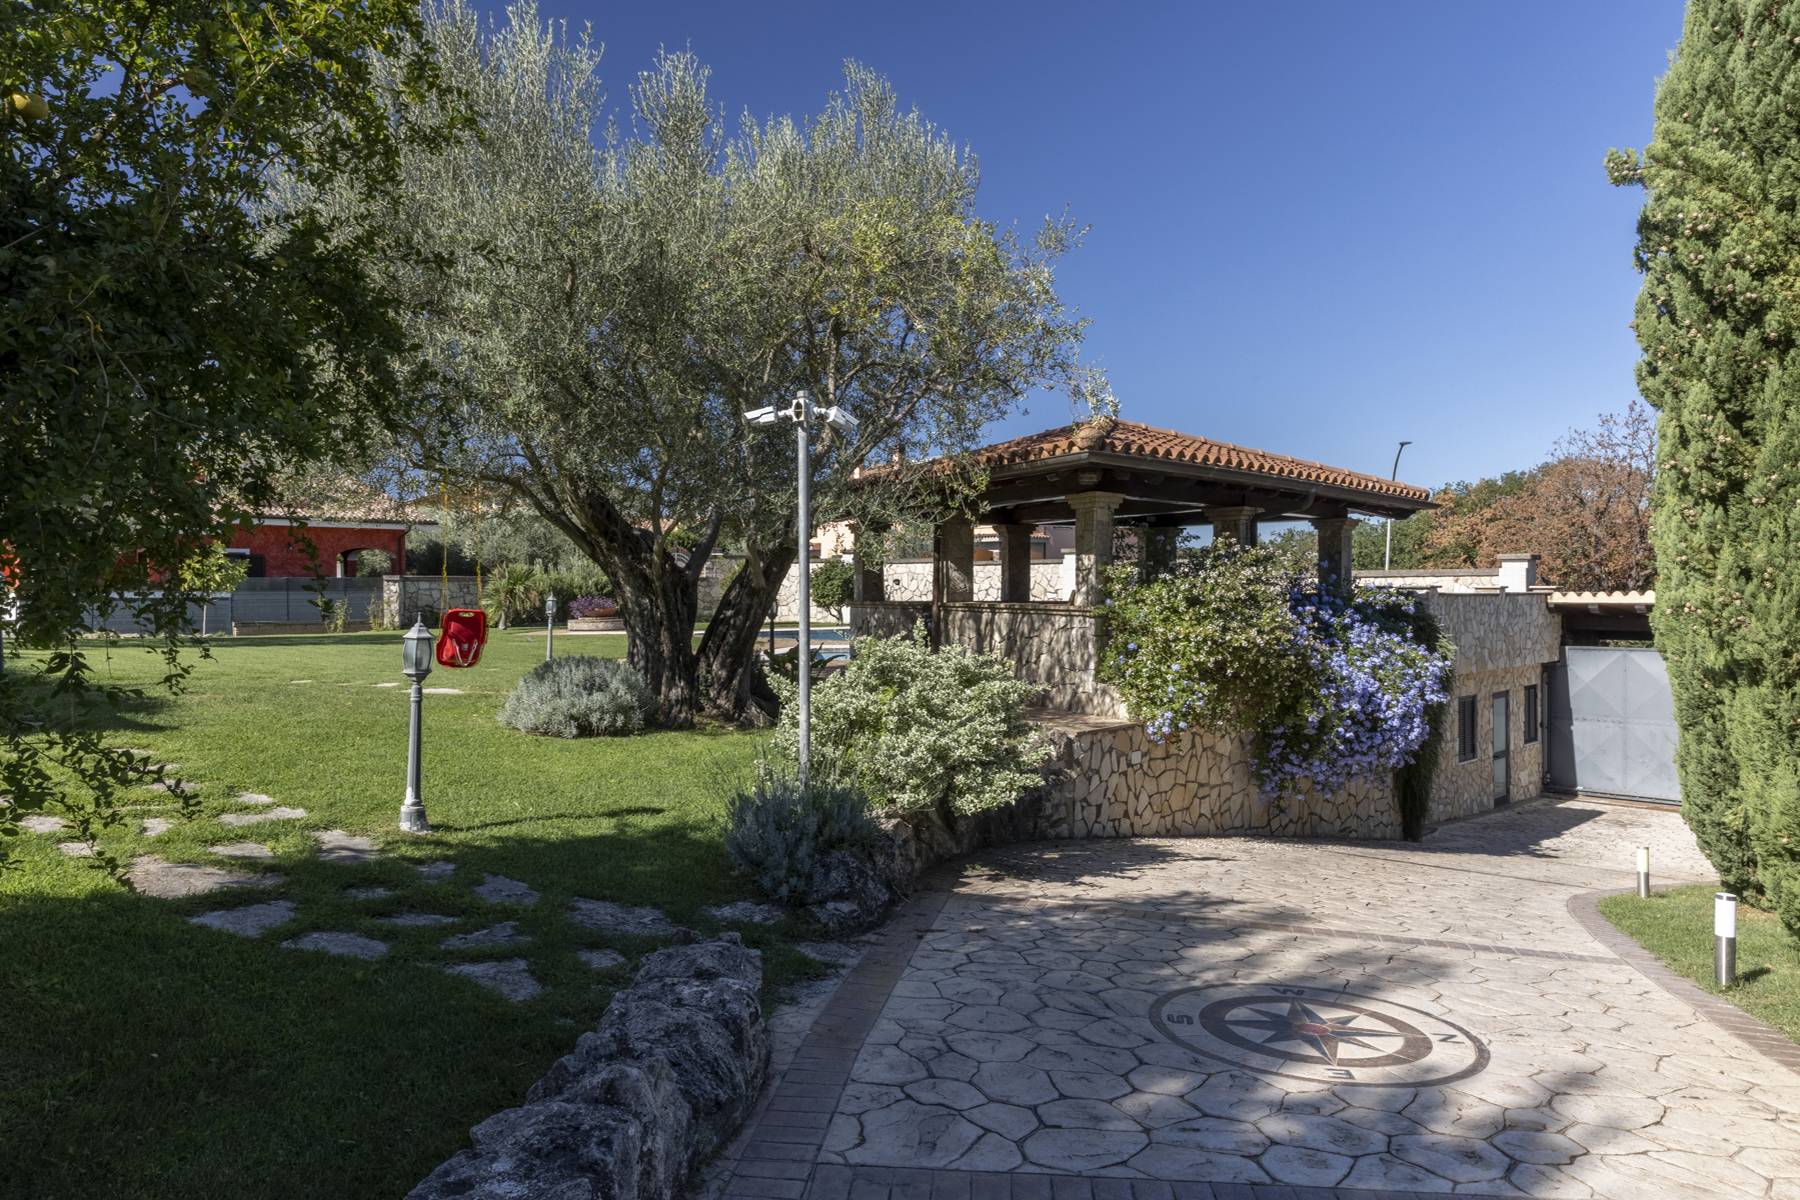 Villa in Vendita a Riano: 5 locali, 500 mq - Foto 3